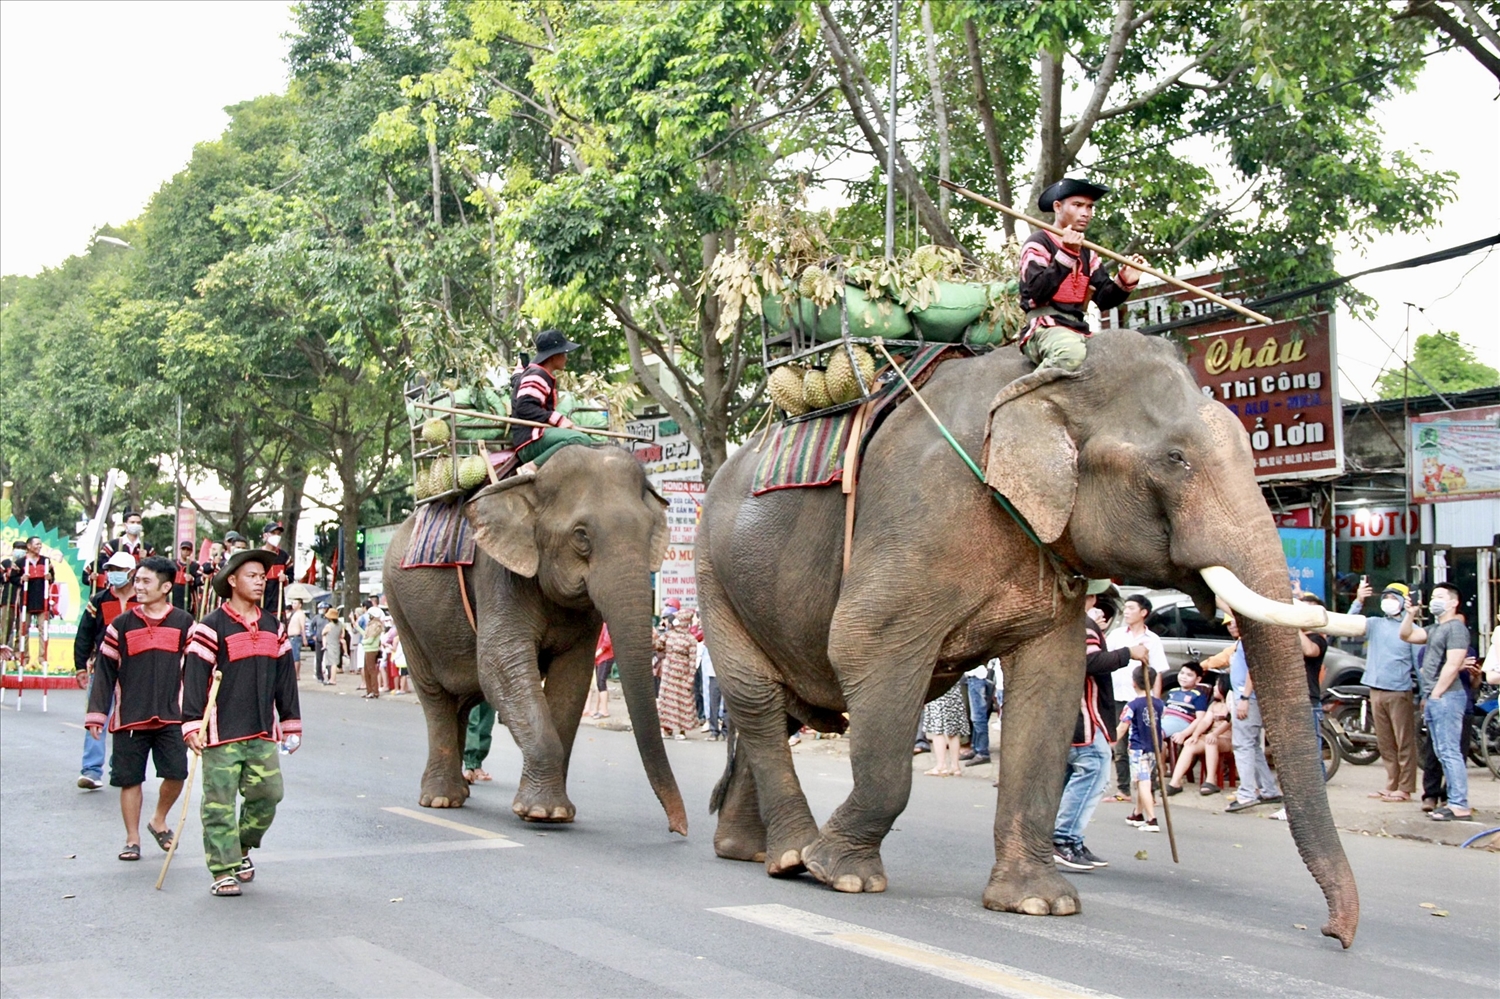 Chú voi xuất hiện trong Lễ hội đường phố thu hút nhiều người dân. Cháu Trần Nguyên Đại, học sinh lớp 5, đến từ huyện Krông Bông chia sẻ: “Cháu được bố mẹ dẫn đi chơi lễ hội, đây là lần đầu tiên cháu thấy một chú voi ngoài đời, cháu rất vui”